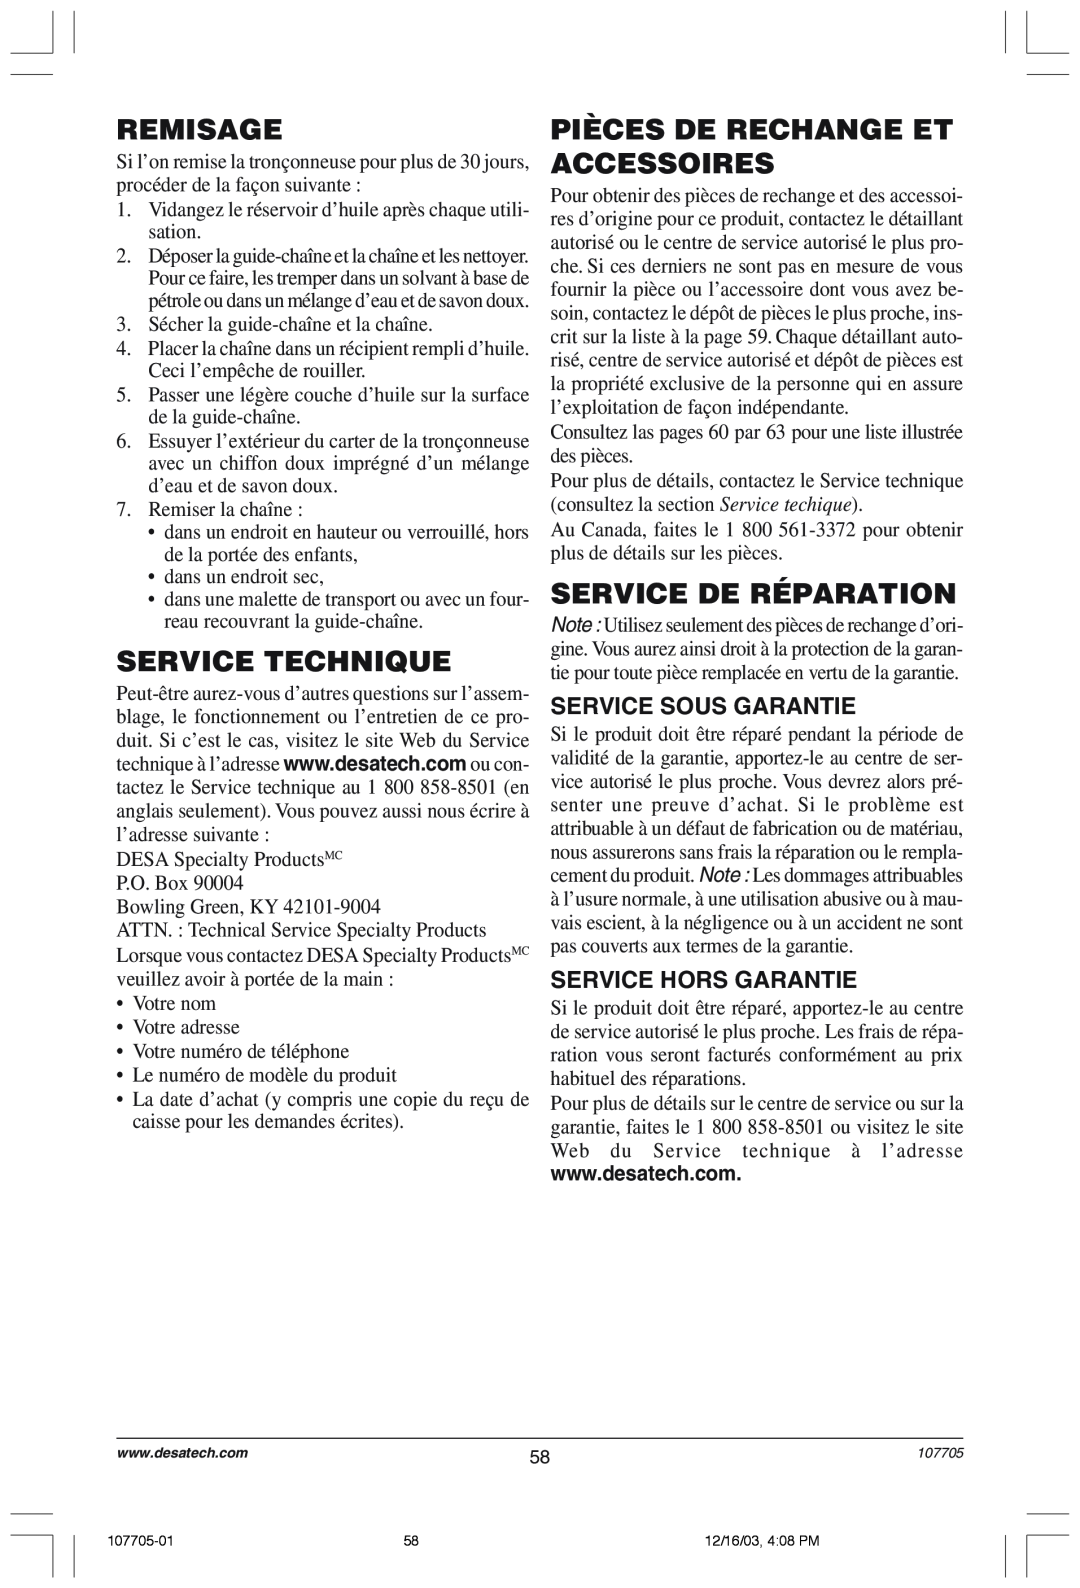 Desa 107624-01 owner manual Remisage, Service Technique, Pièces De Rechange Et Accessoires, Service De Réparation 